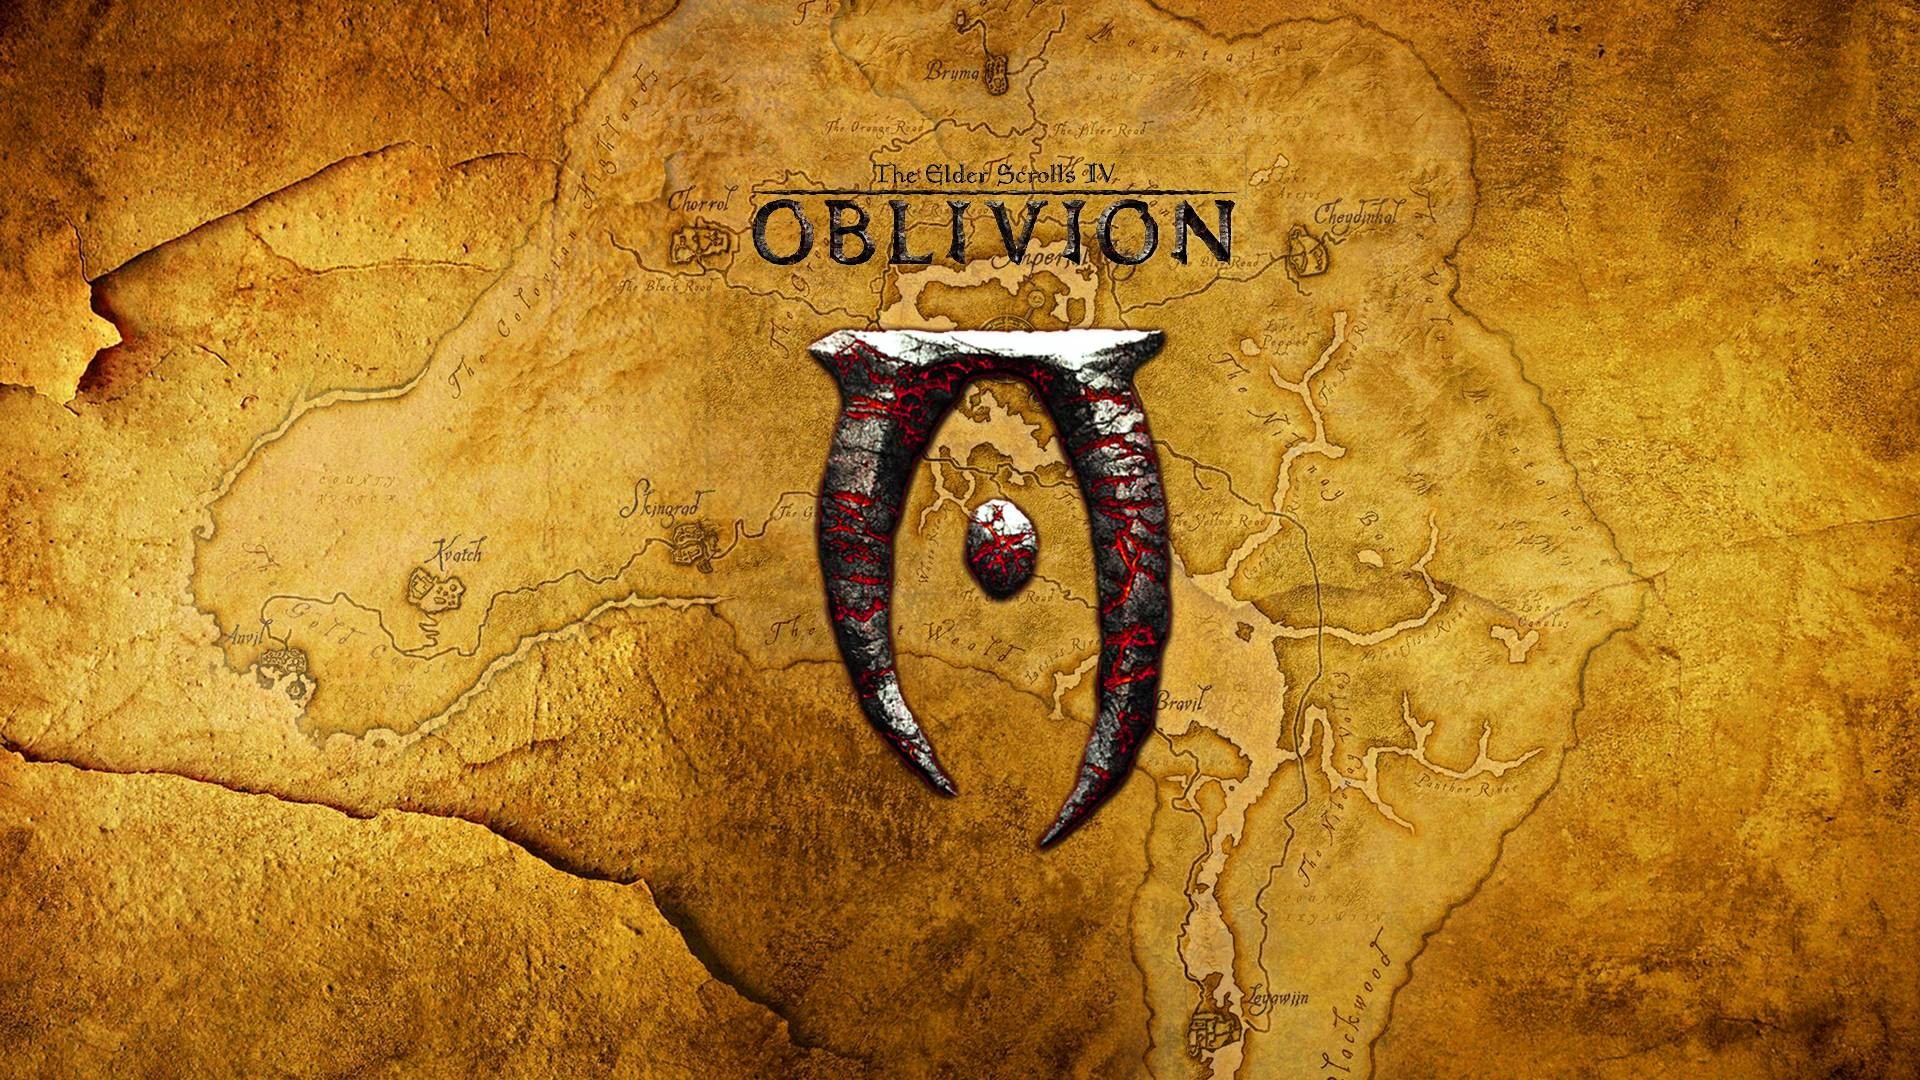 the elder scrolls iv: oblivion, video game, the elder scrolls